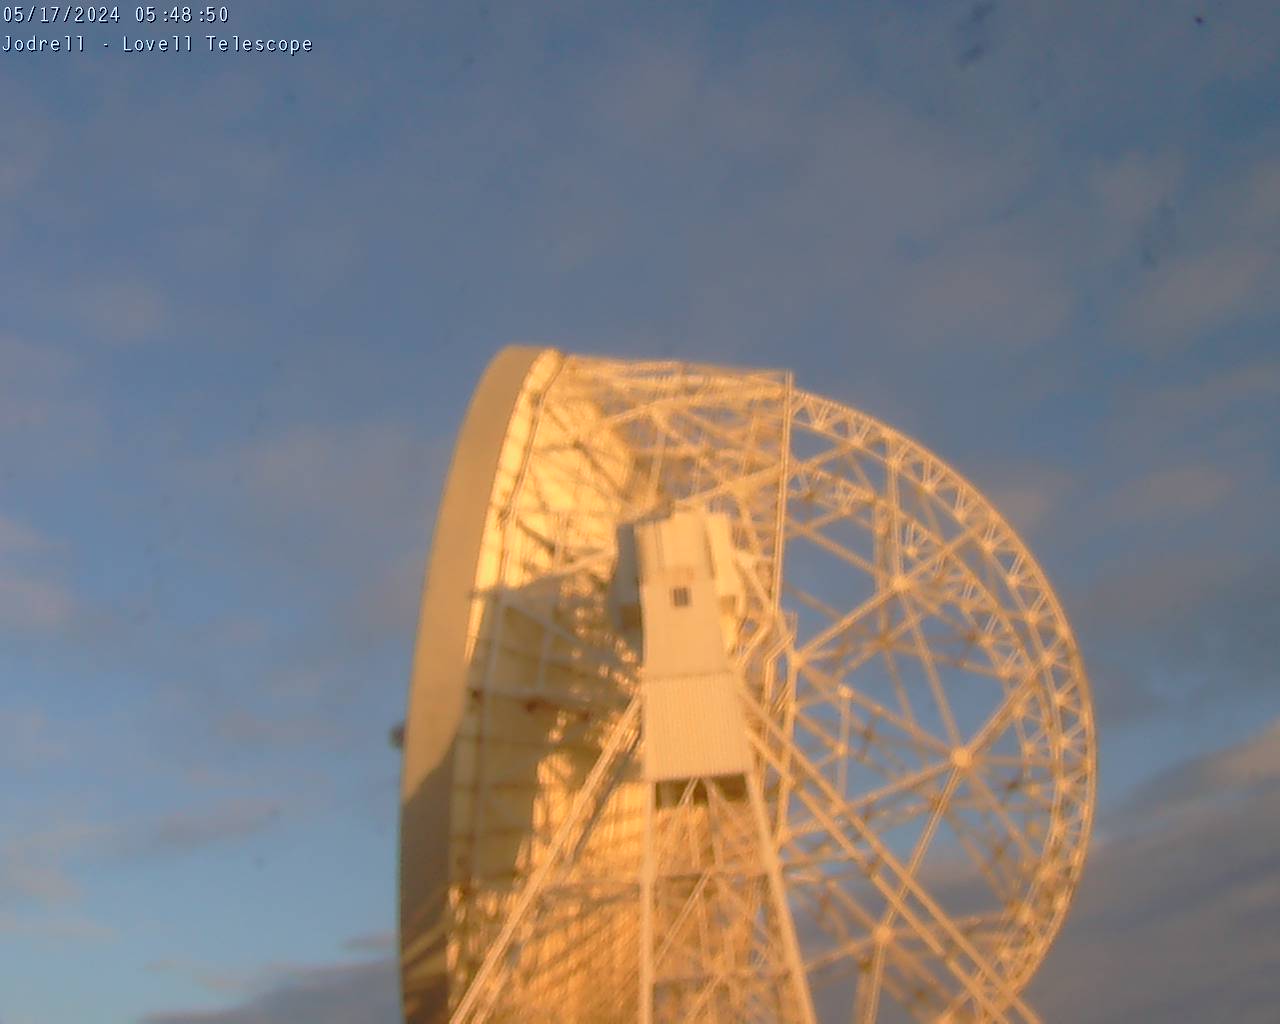 Observatoire de Jodrell Bank Sa. 05:49